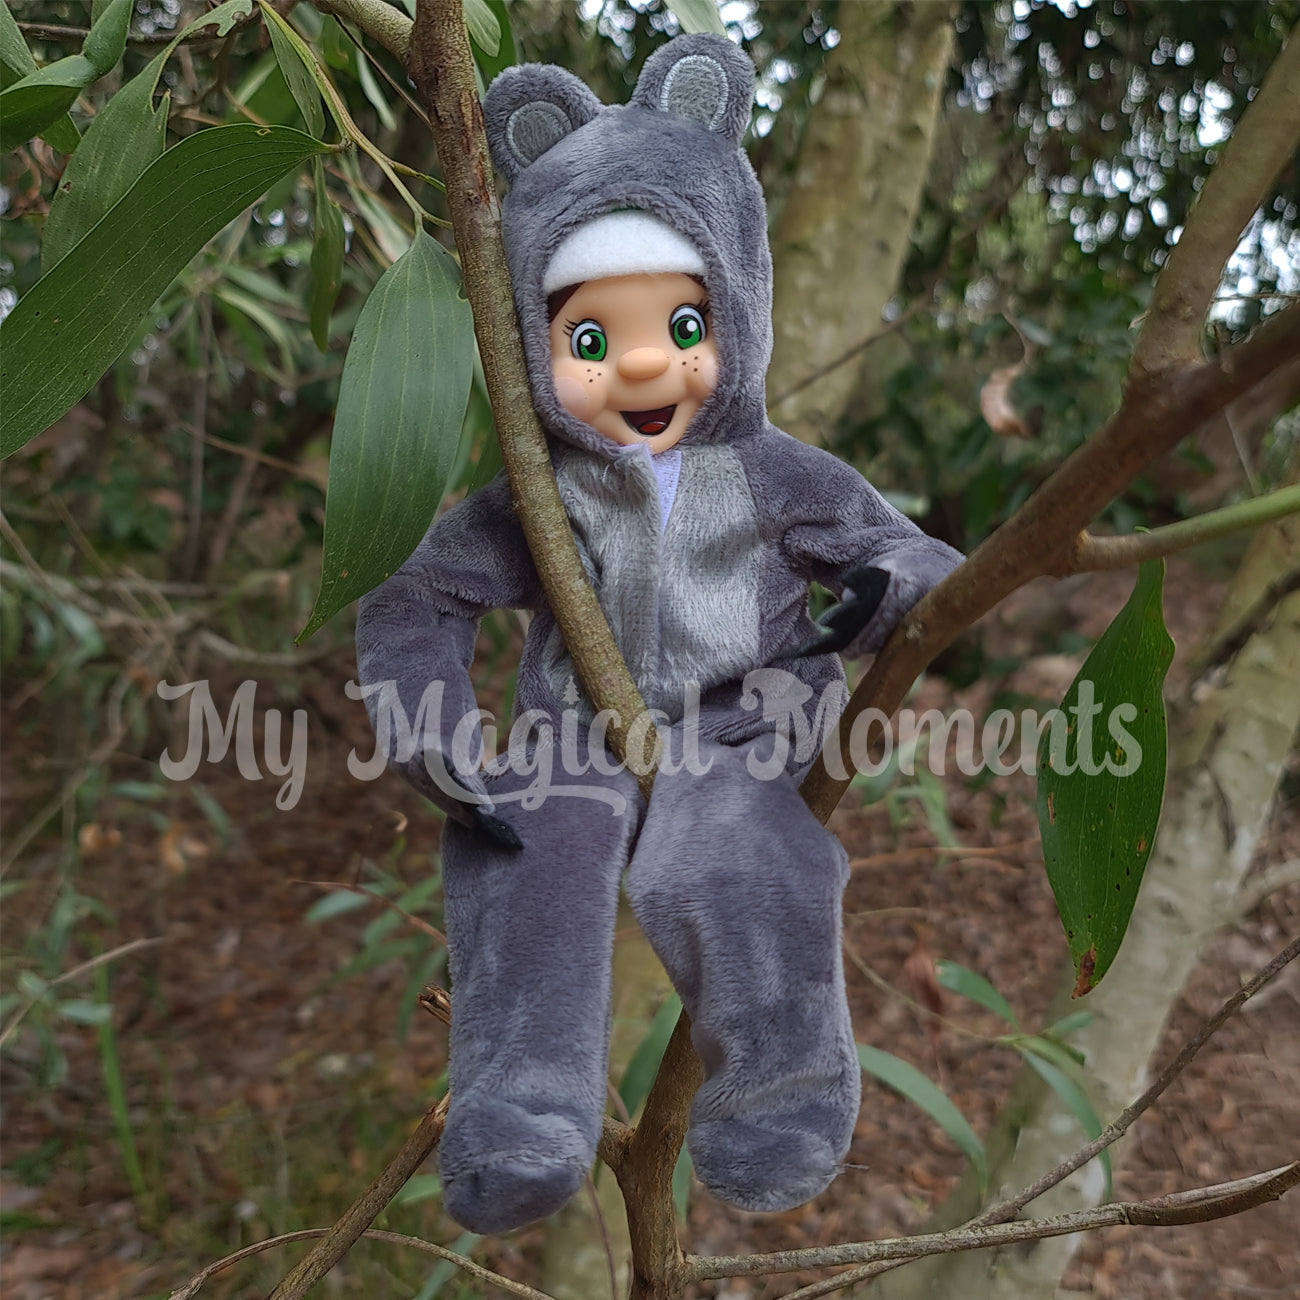 Elf dressed as a koala in a tree on Bribie island